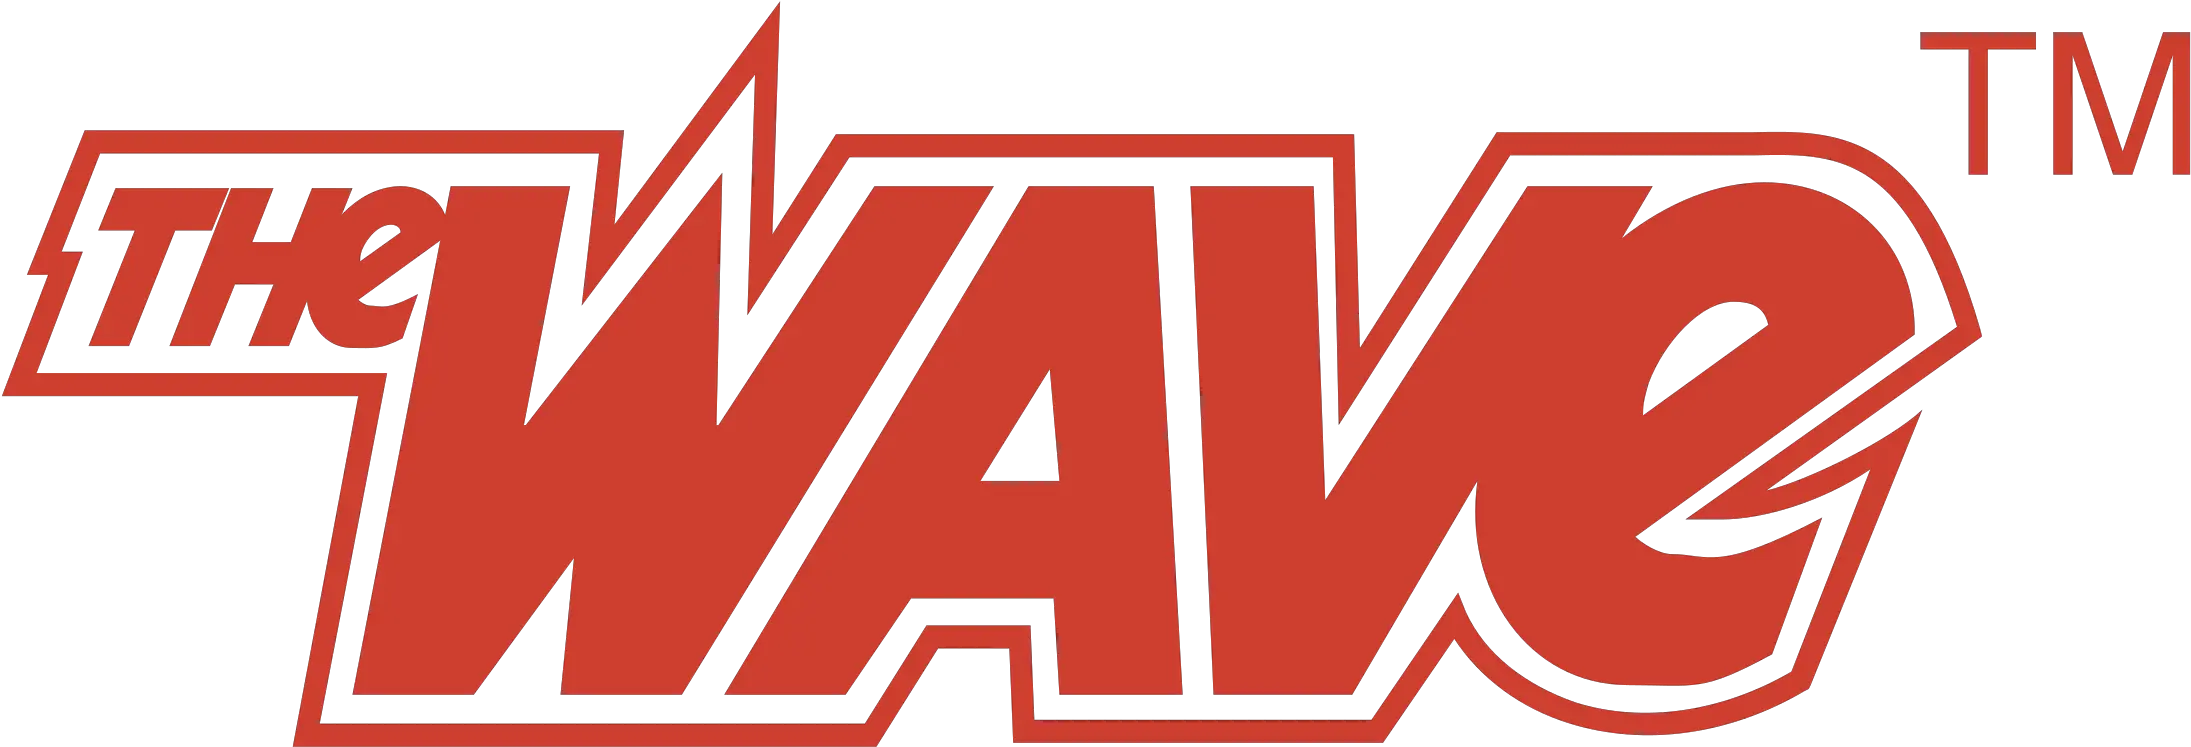 The Wave Logo Png Transparent U0026 Svg Vector Freebie Supply Graphic Design Wave Logo